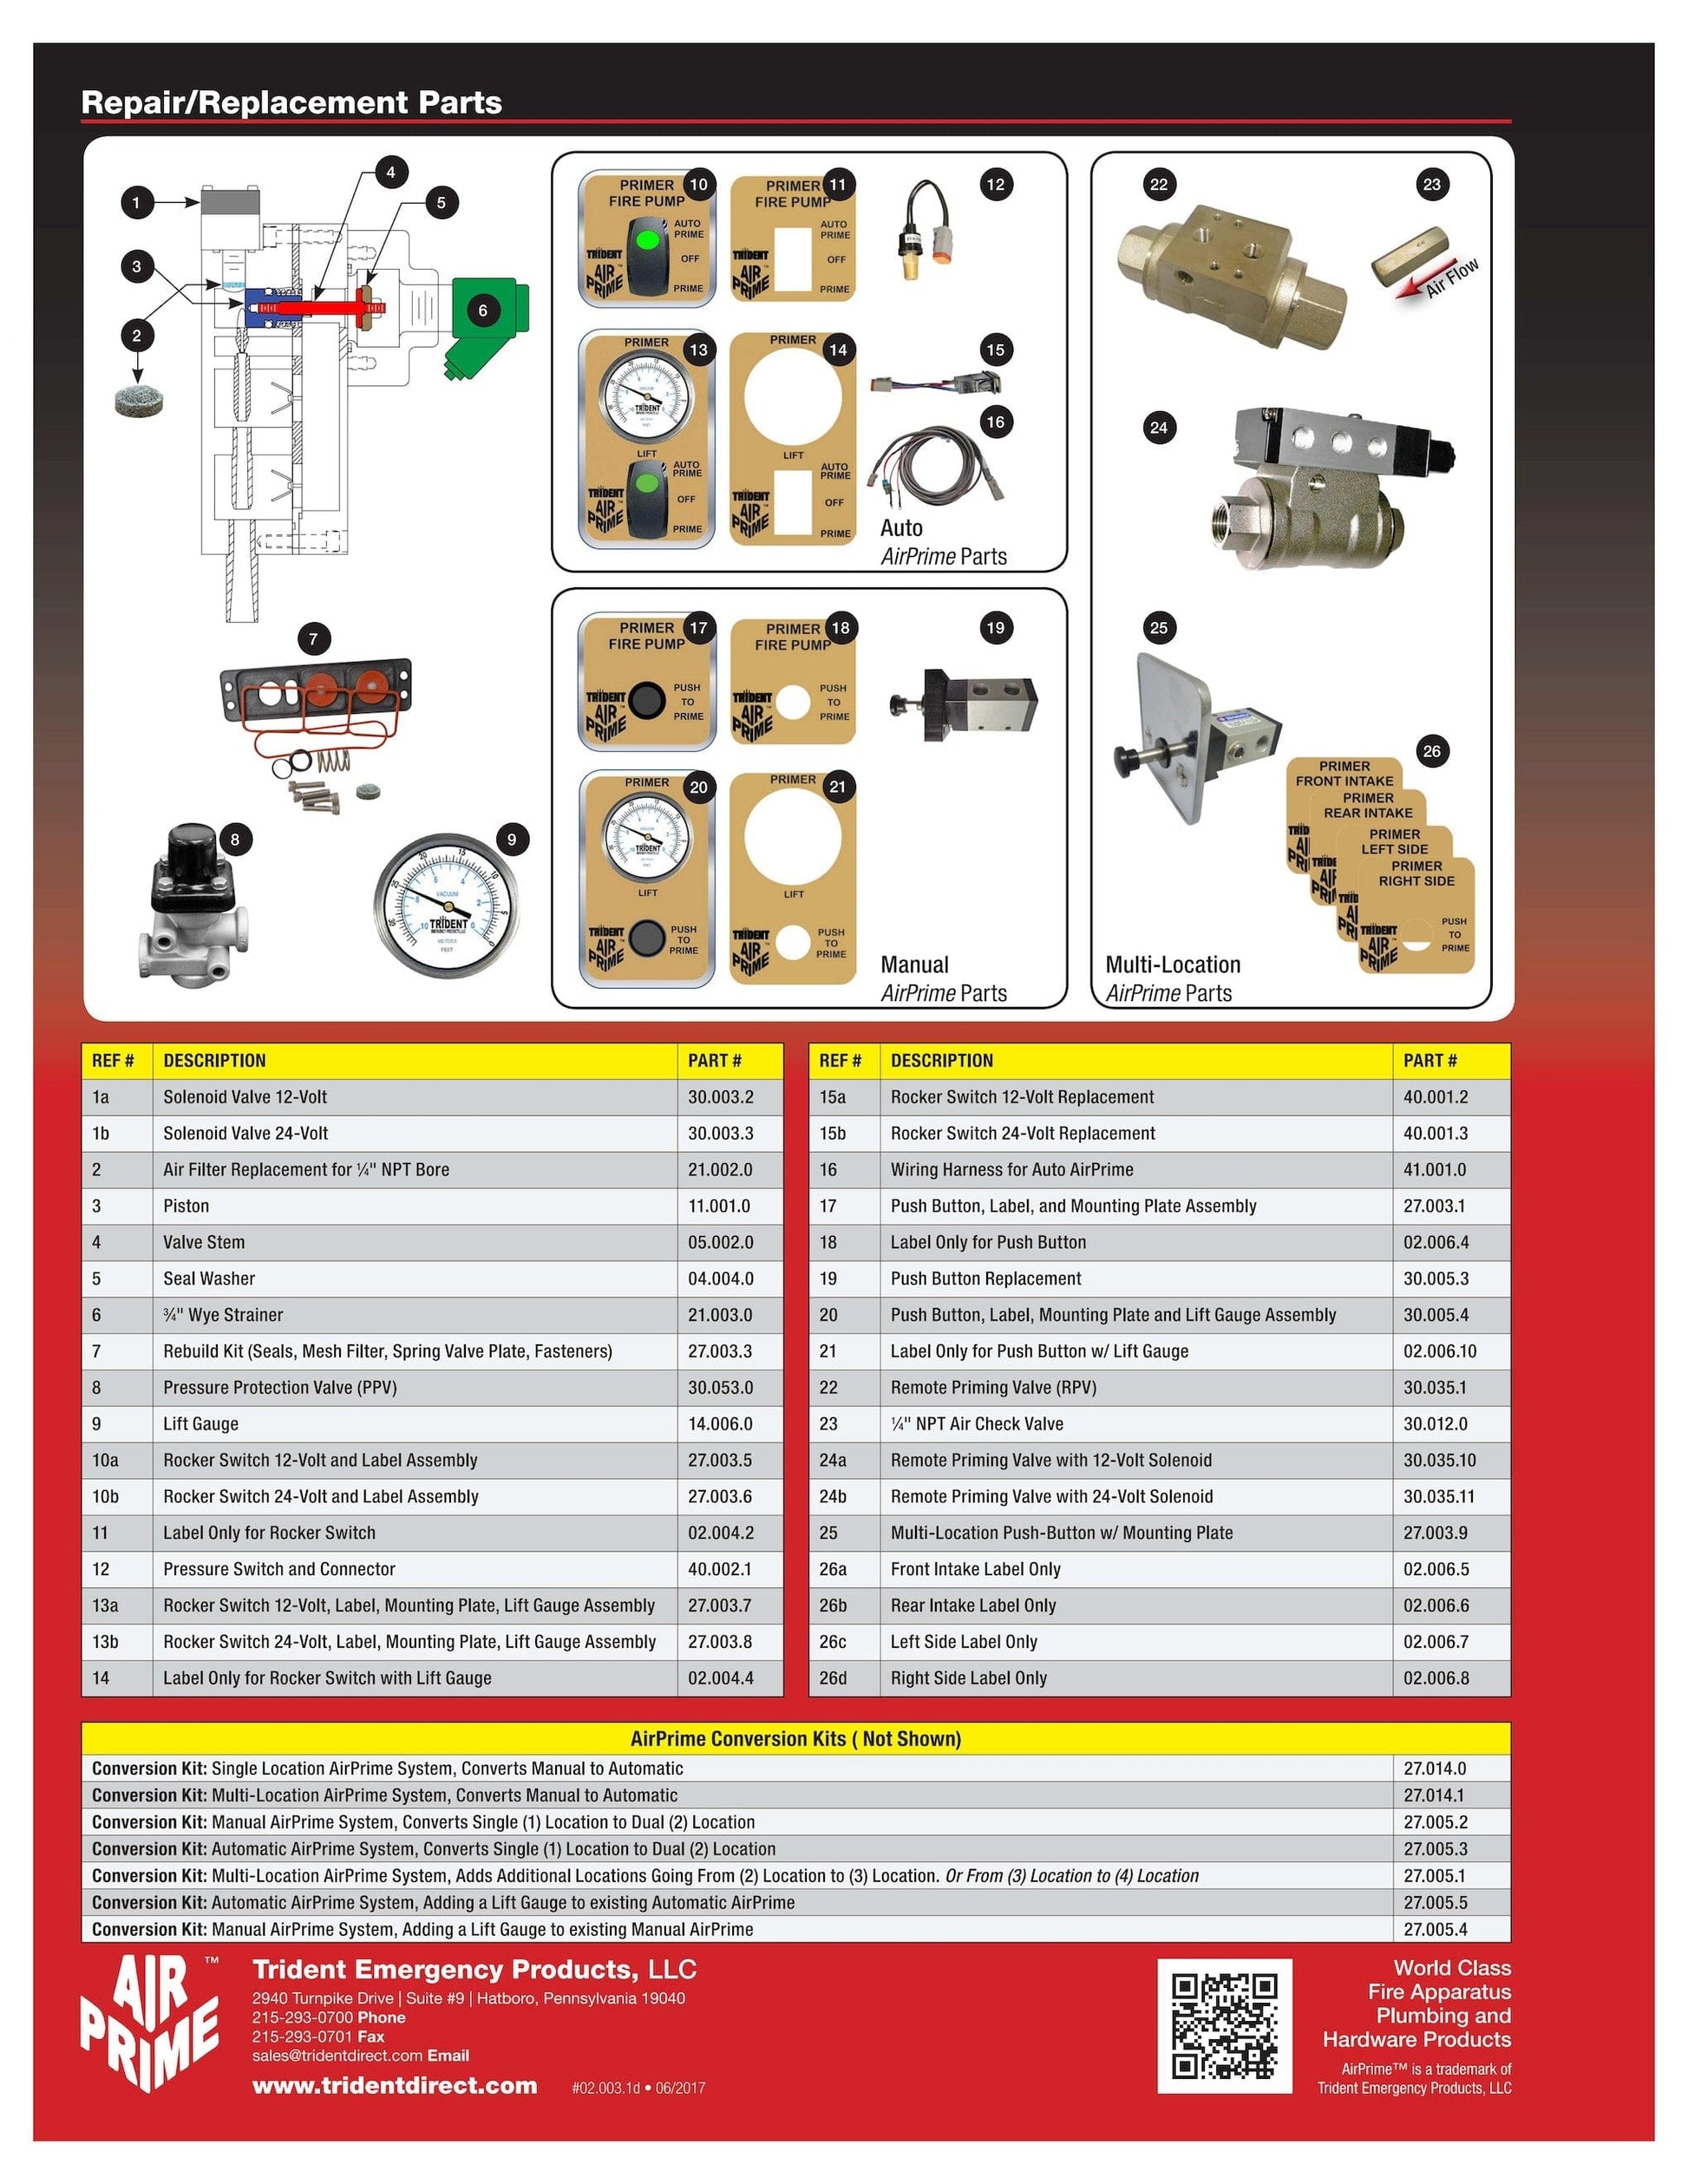 Trident  Air Primer Parts - 1/4" NPT Air Check Valve - 30.012.0